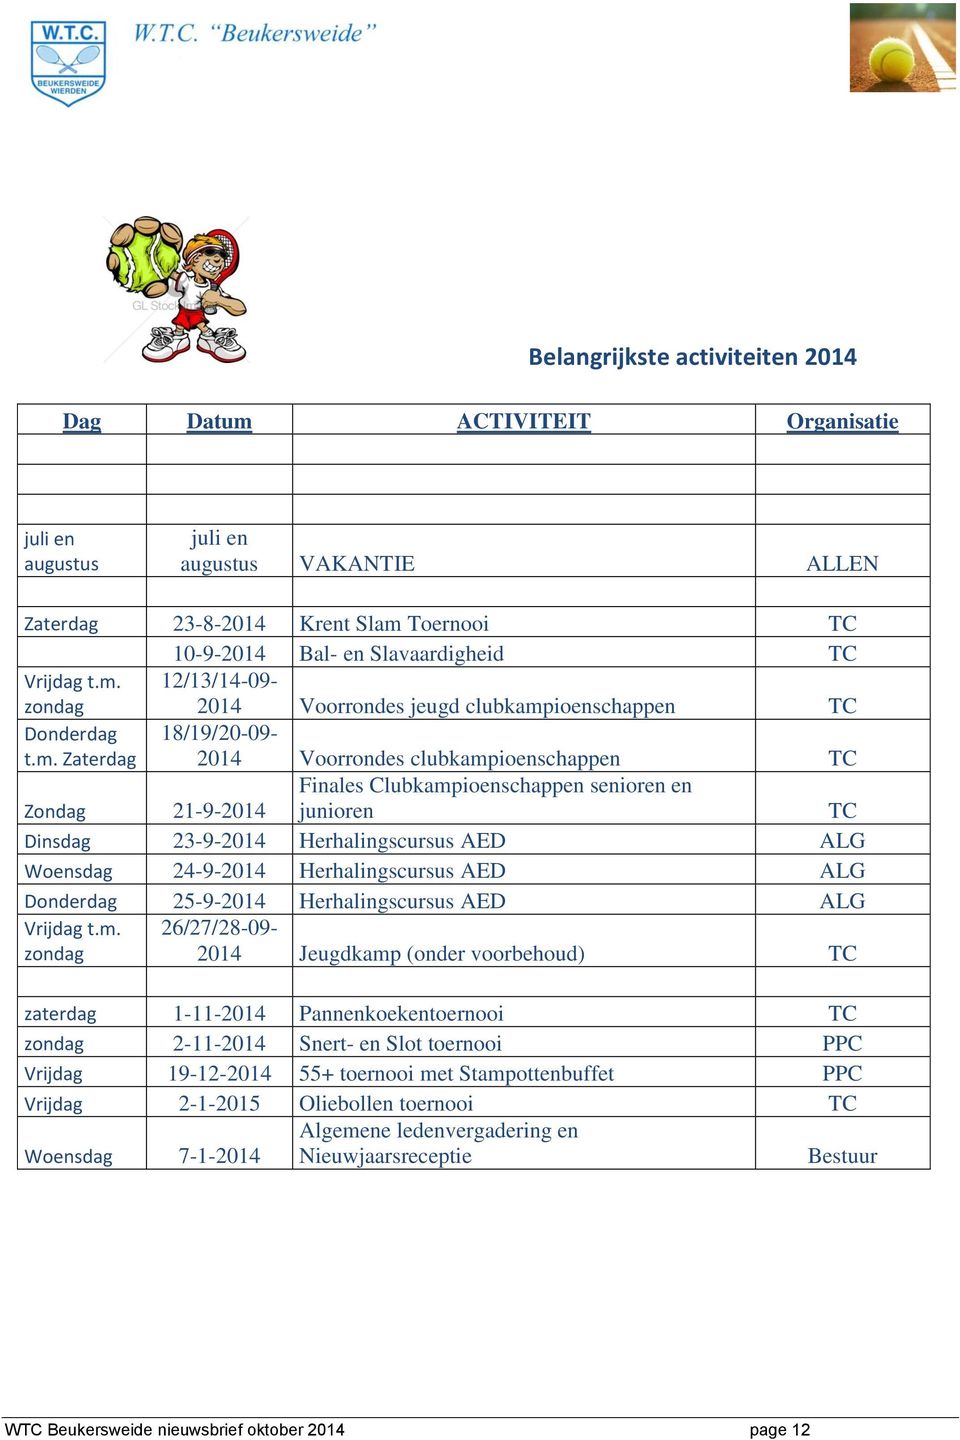 senioren en junioren TC Dinsdag 23-9-2014 Herhalingscursus AED ALG Woensdag 24-9-2014 Herhalingscursus AED ALG Donderdag 25-9-2014 Herhalingscursus AED ALG Vrijdag t.m.